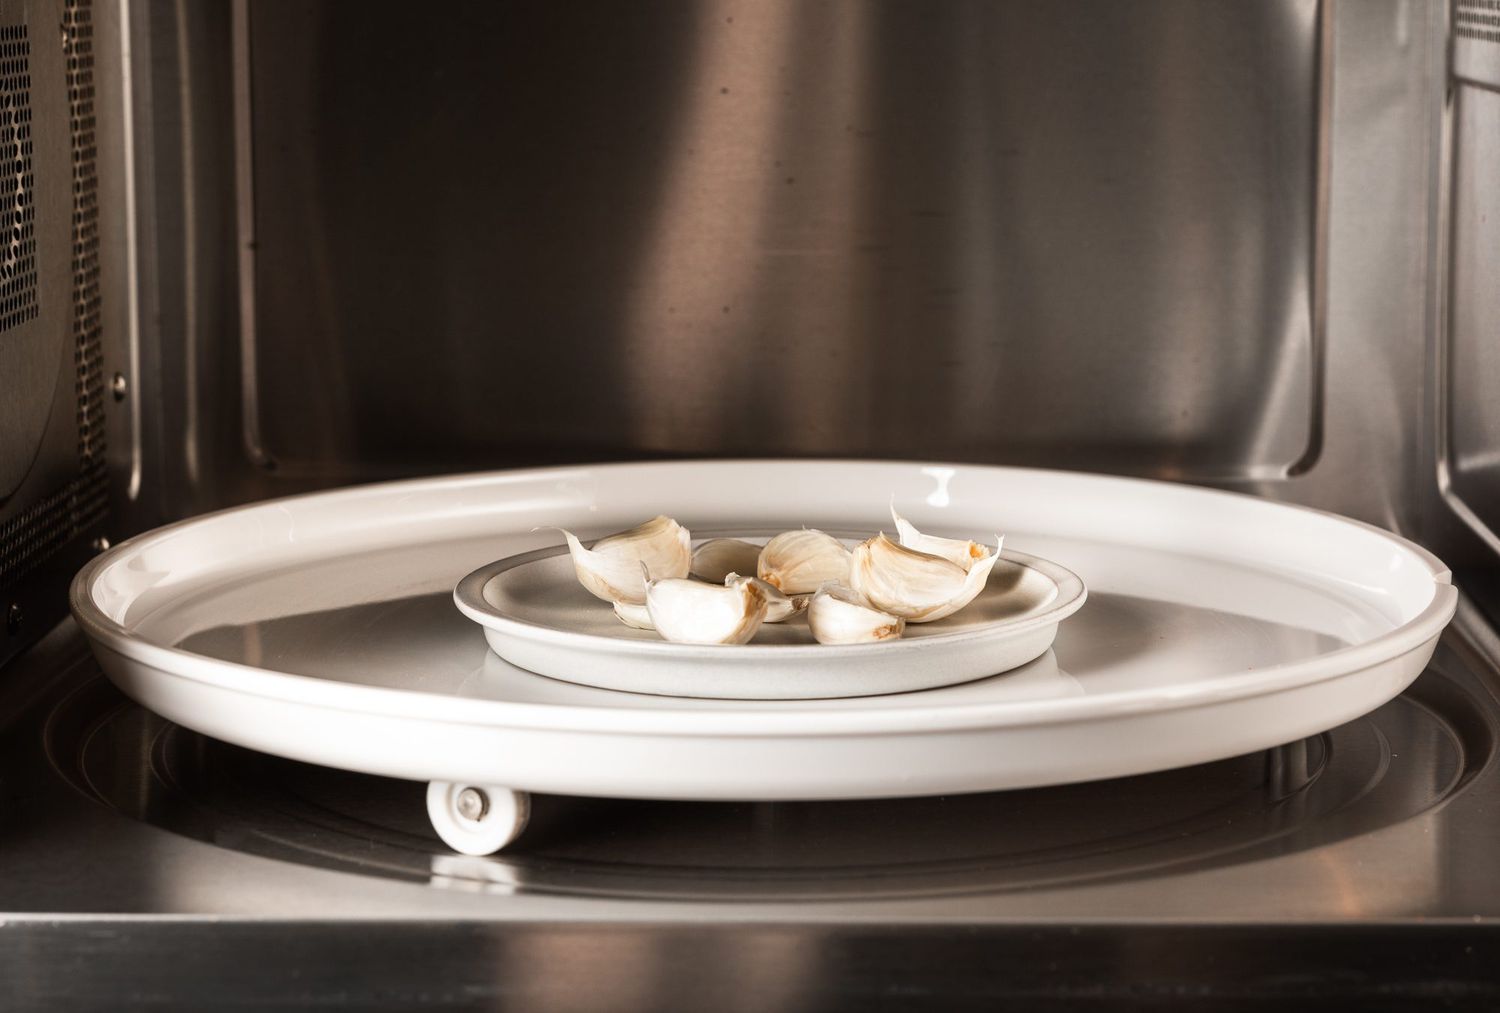 Aproximadamente calentando ajo en un plato pequeño en un horno de microondas